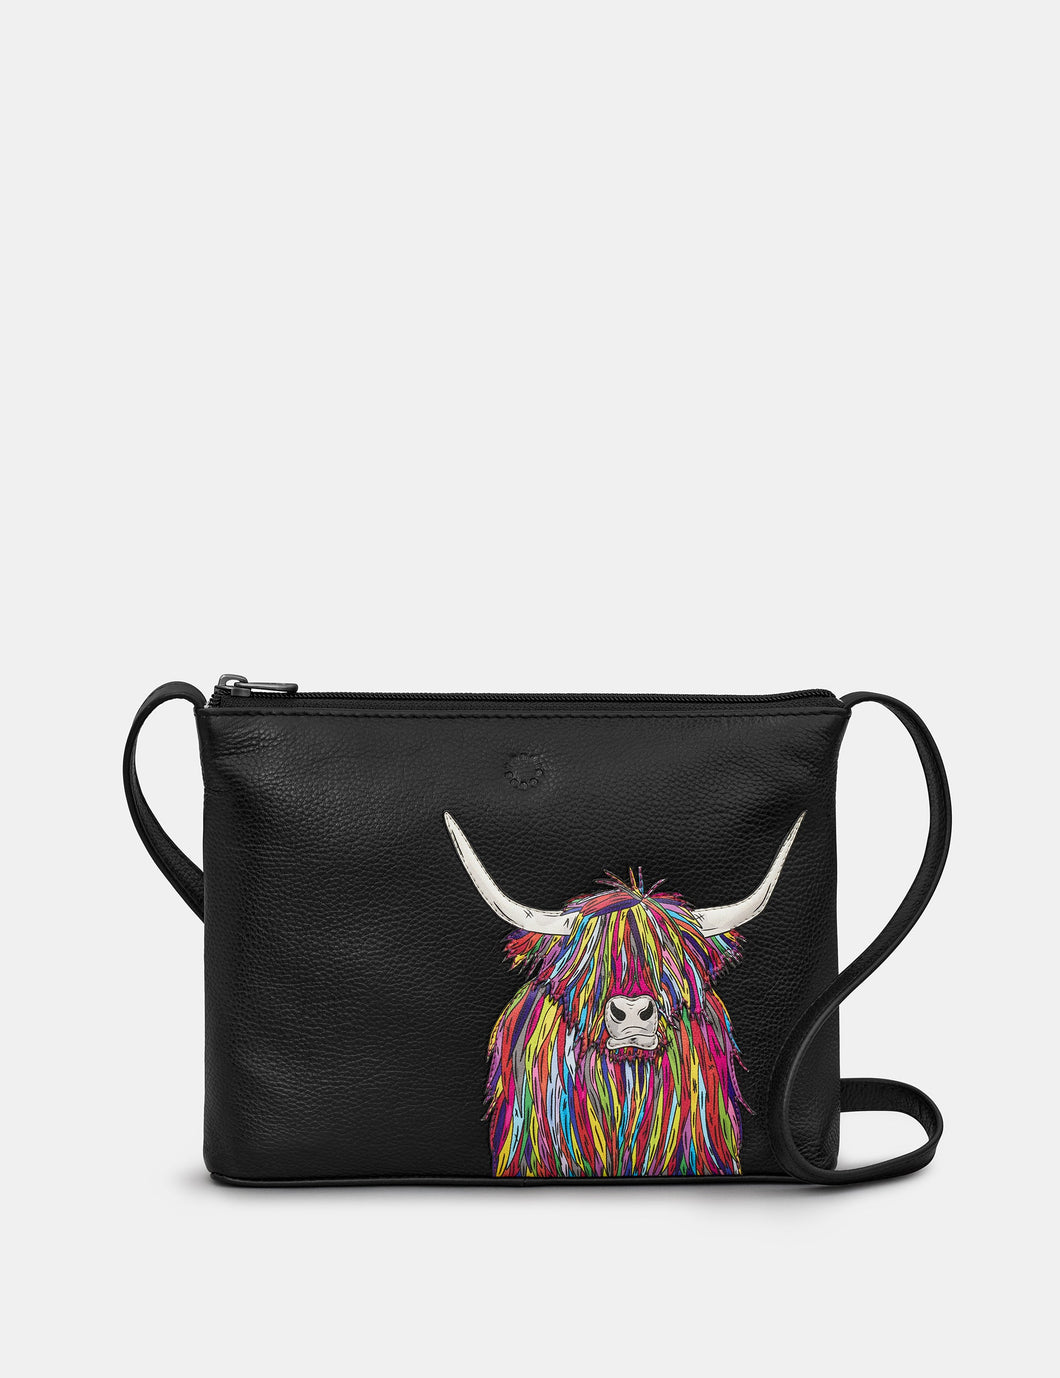 Yoshi YB214 Black Rainbow Highland Cow Leather CrossBody Bag